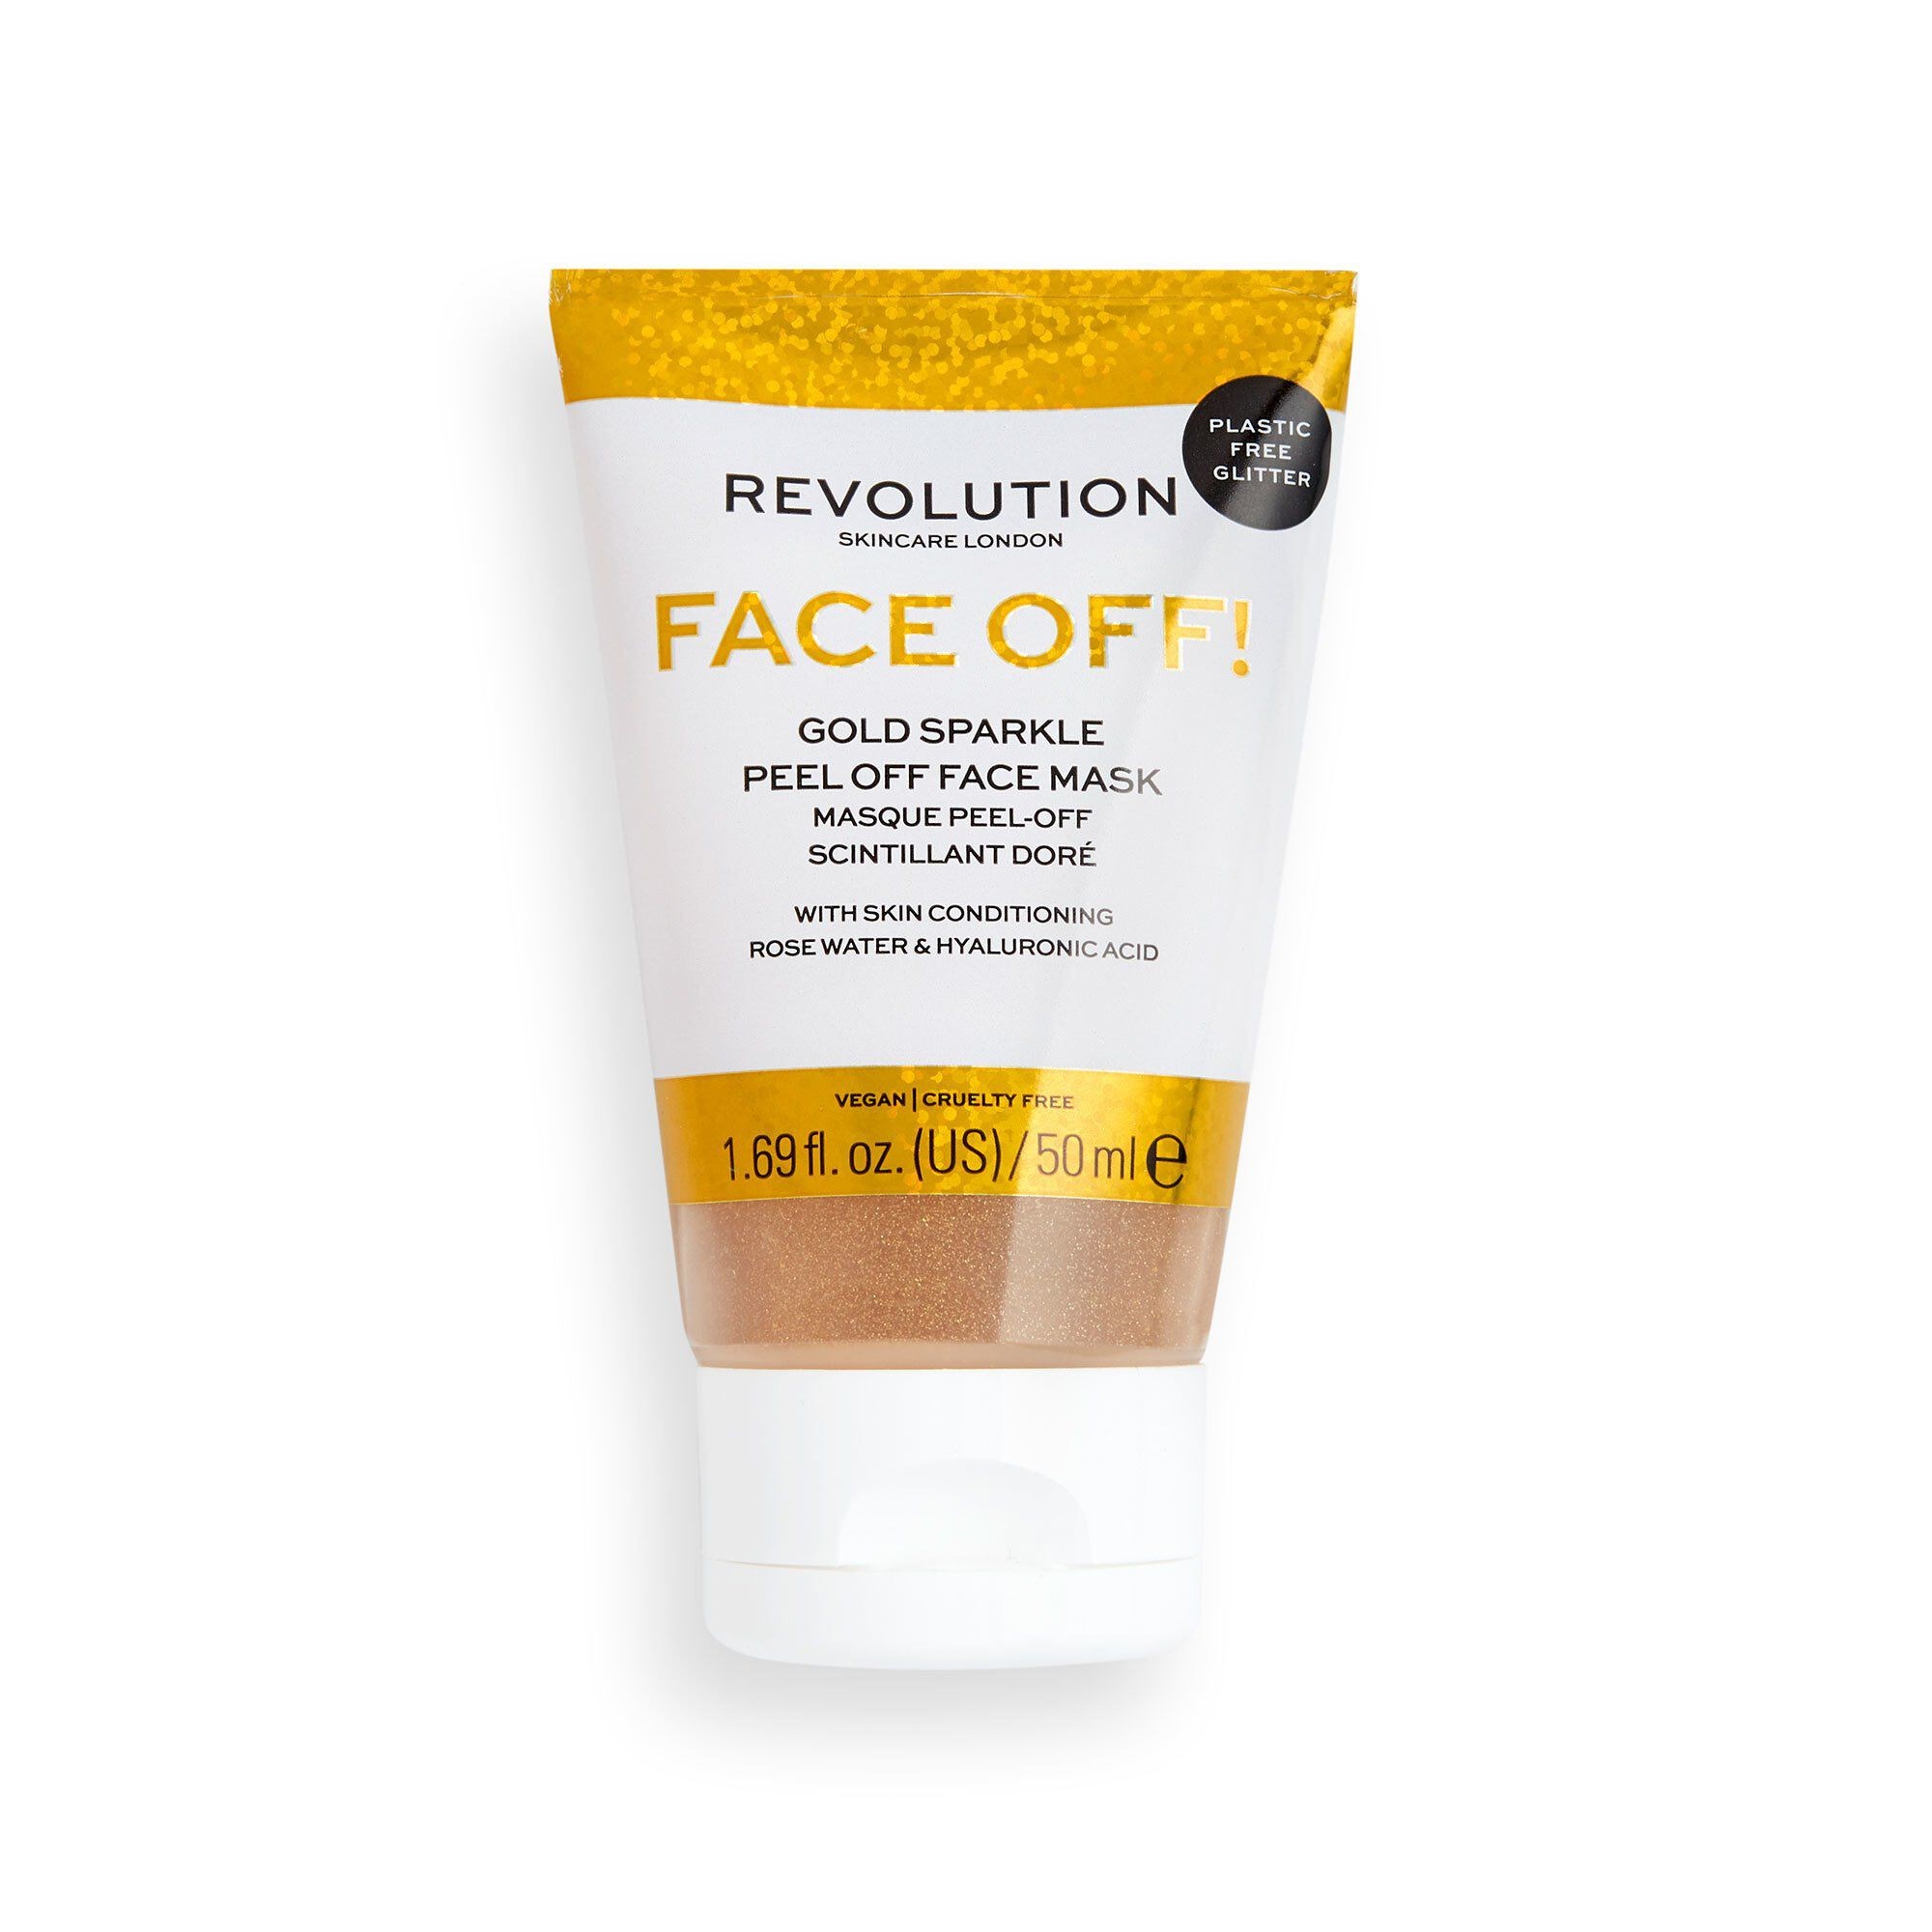 Gesichtsmaske - Face Off! Gold Sparkle Peel Off Face Mask